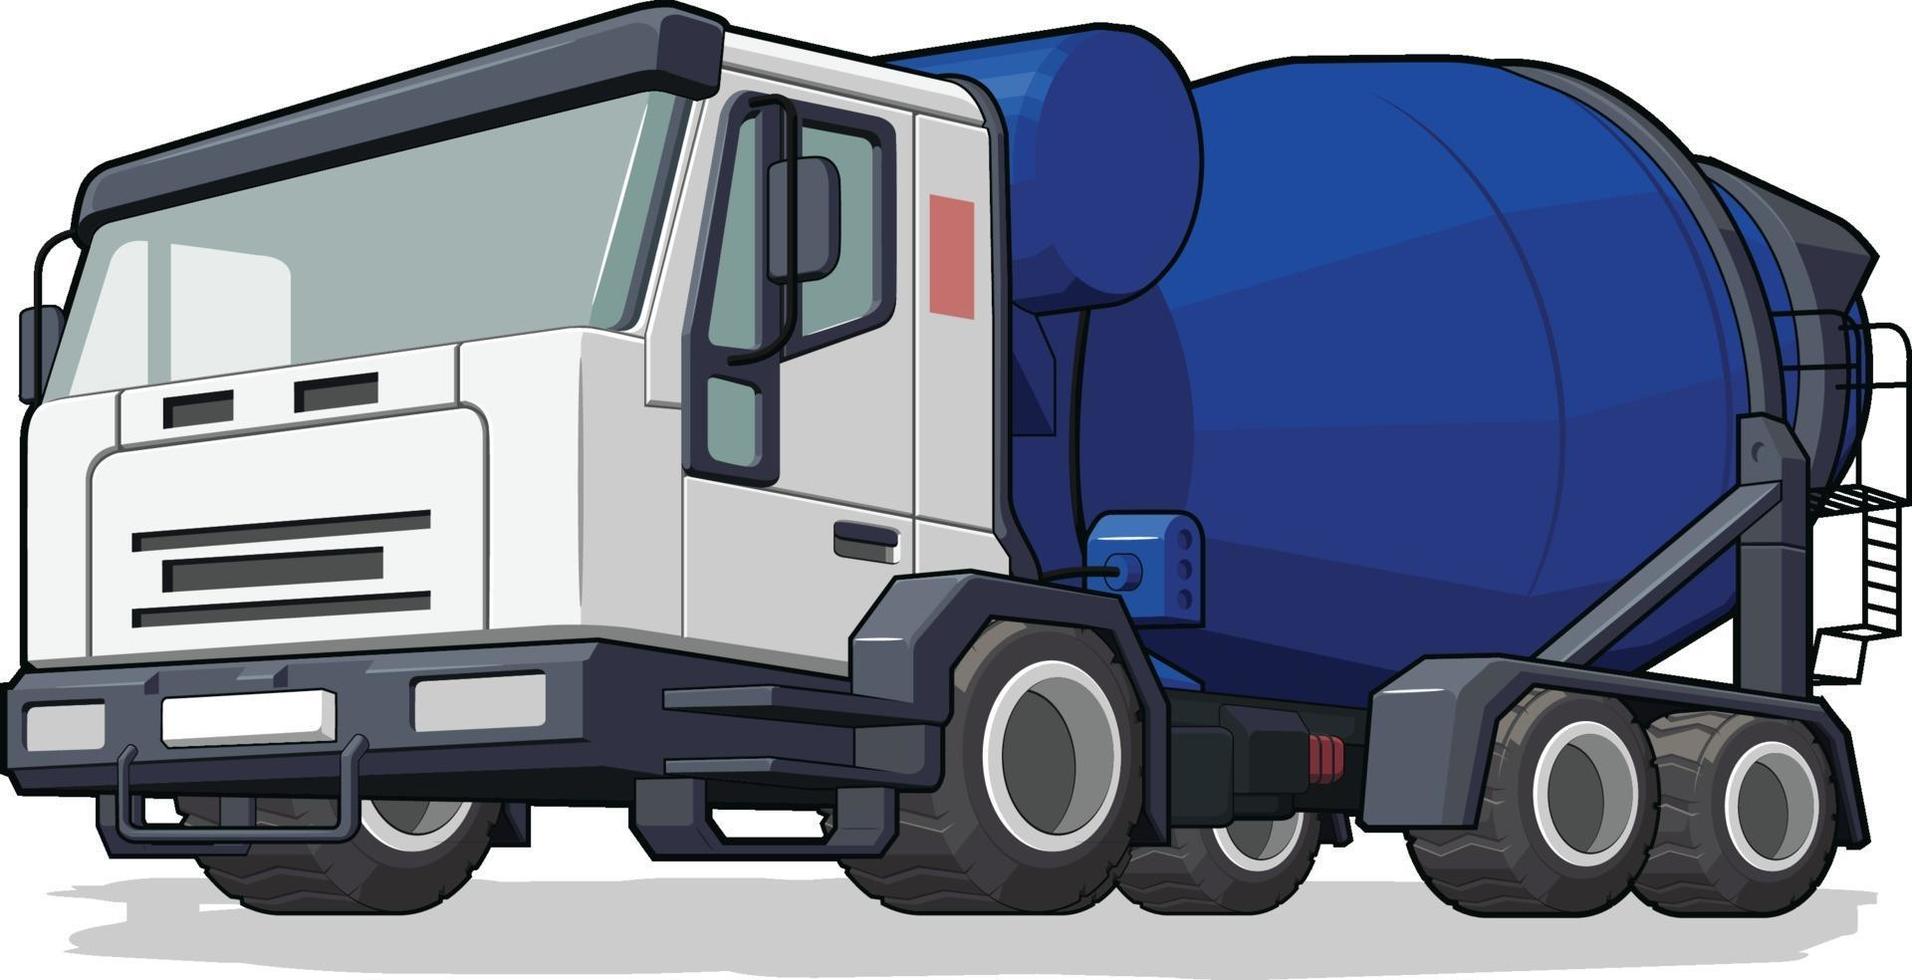 Cement Mixer Truck Construction Heavy Machine Industry Cartoon vector